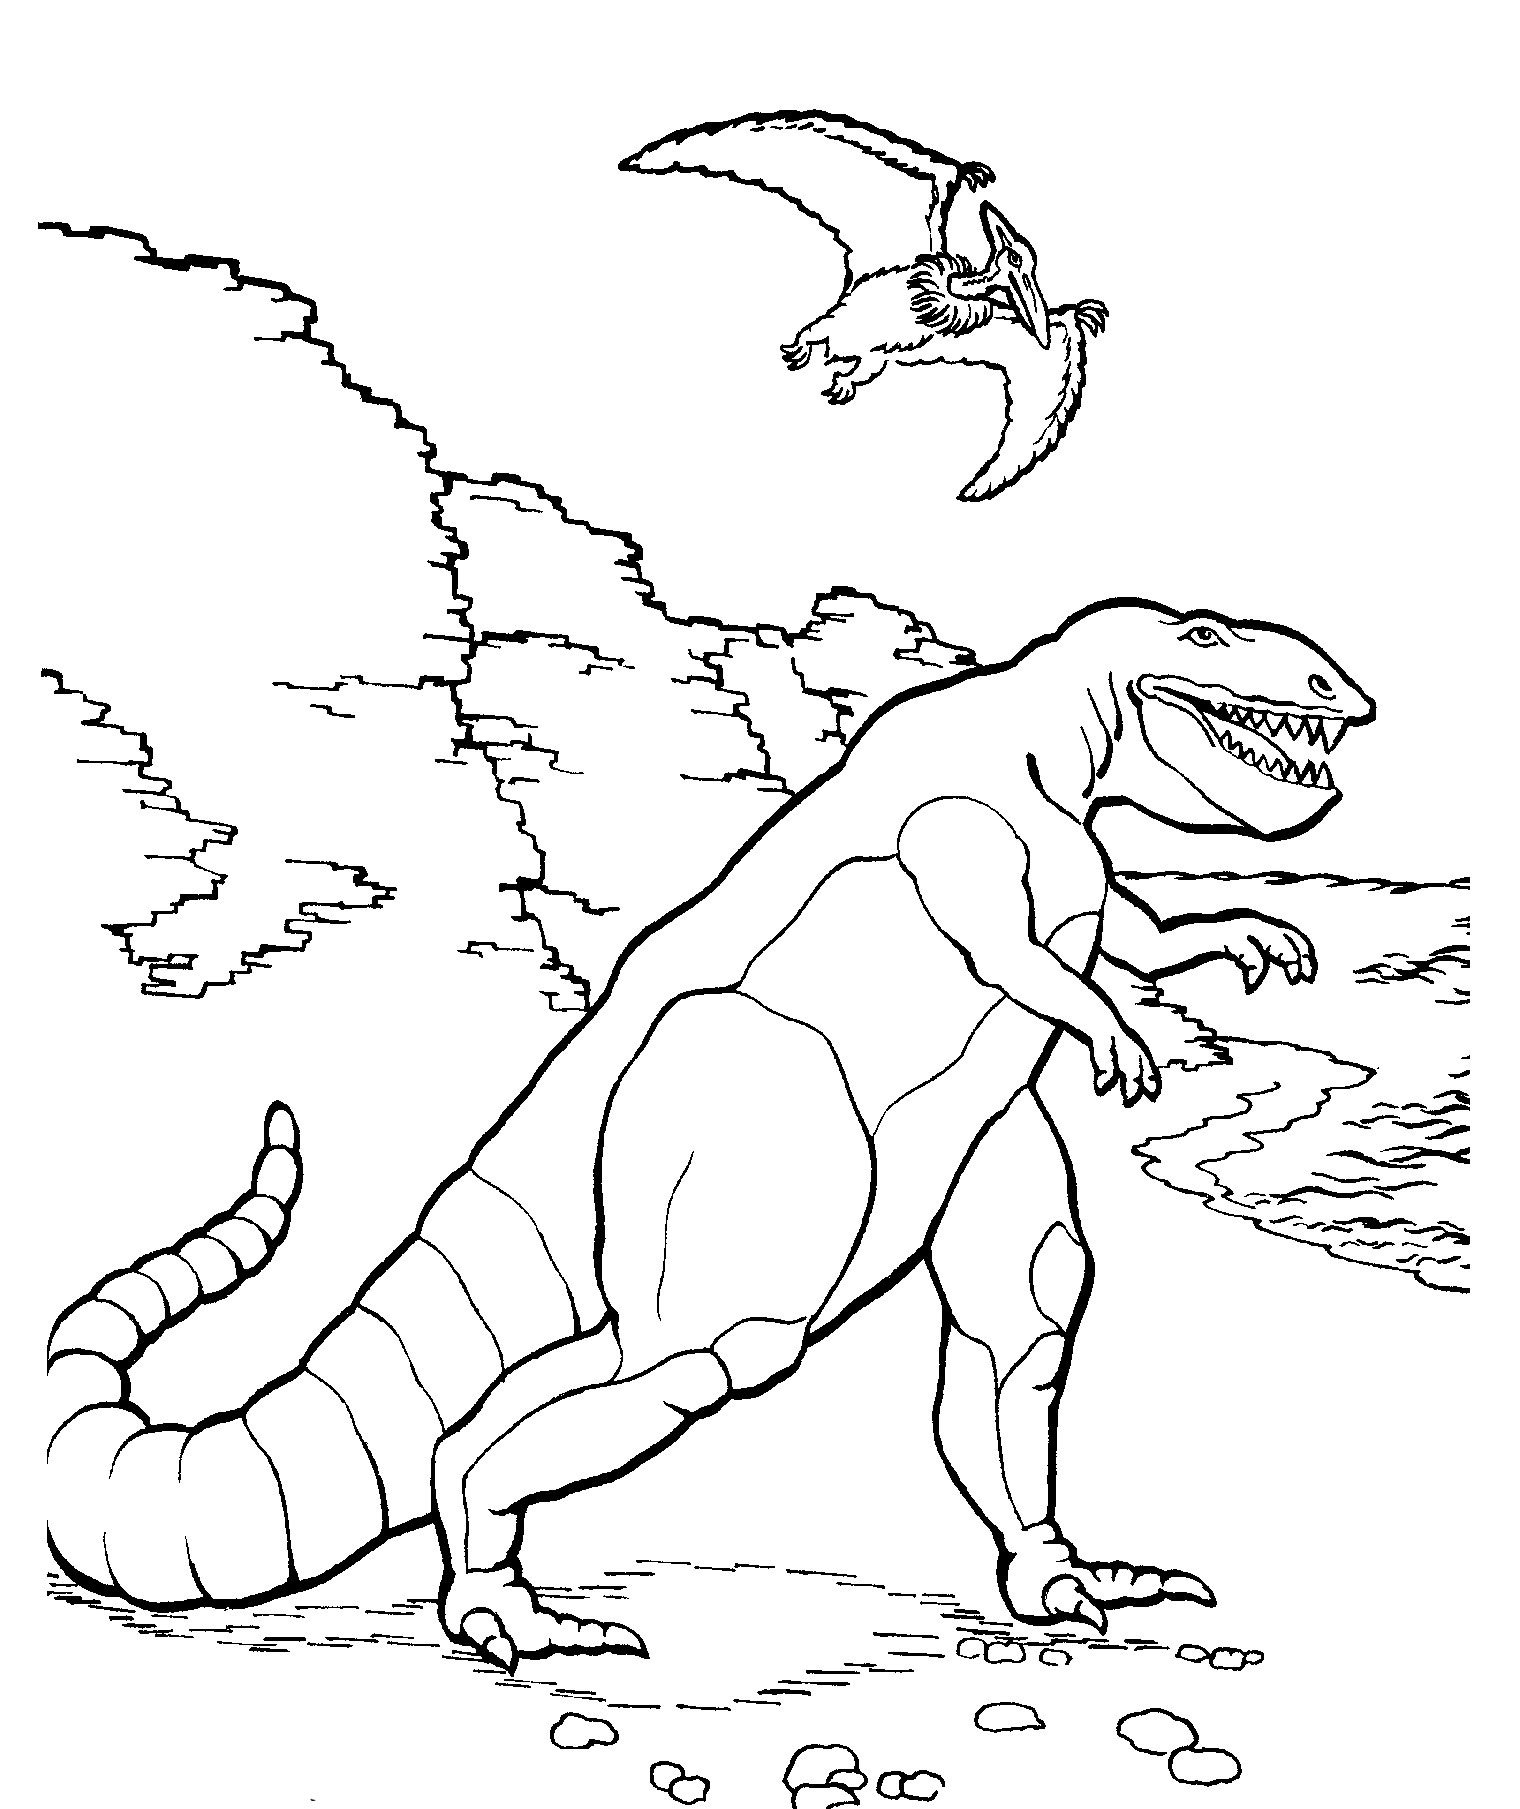 Раскраска динозавр формат а4. Тарбозавр раскраска динозавра. Раскраски для мальчиков Тарбозавр. Тарбозавр разукрашка. Динозавры / раскраска.